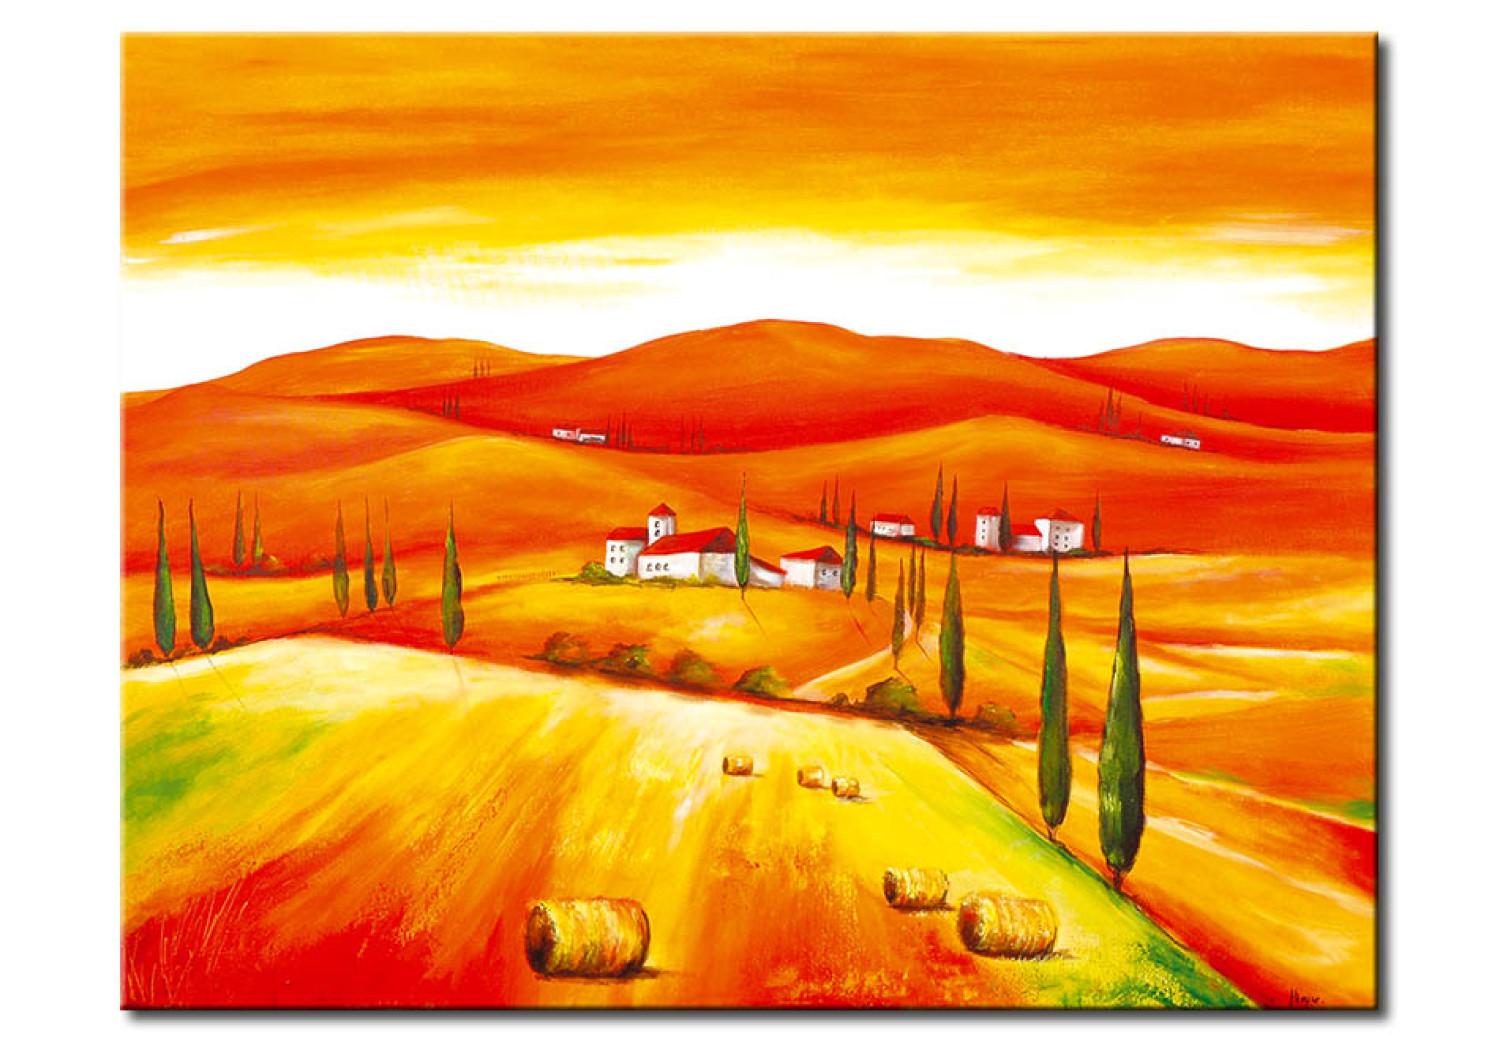 Cuadro Campos toscanos (1 pieza) - paisaje de colinas y arquitectura italiana